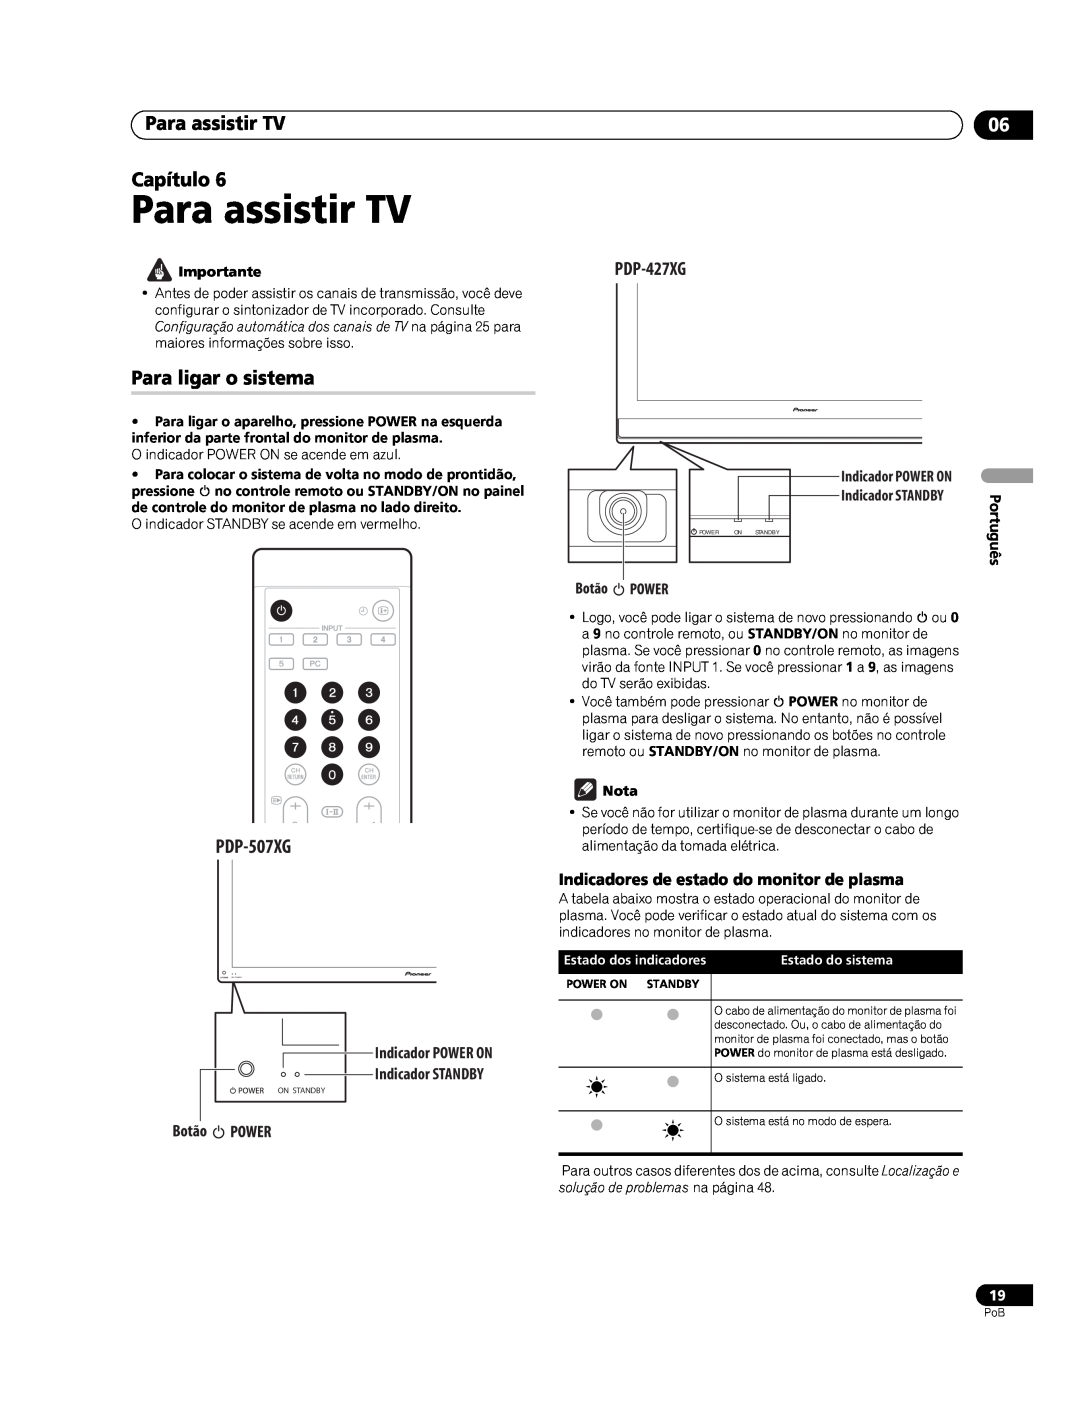 Pioneer PDP-507XG manual Para assistir TV Capítulo, Para ligar o sistema, Indicadores de estado do monitor de plasma 